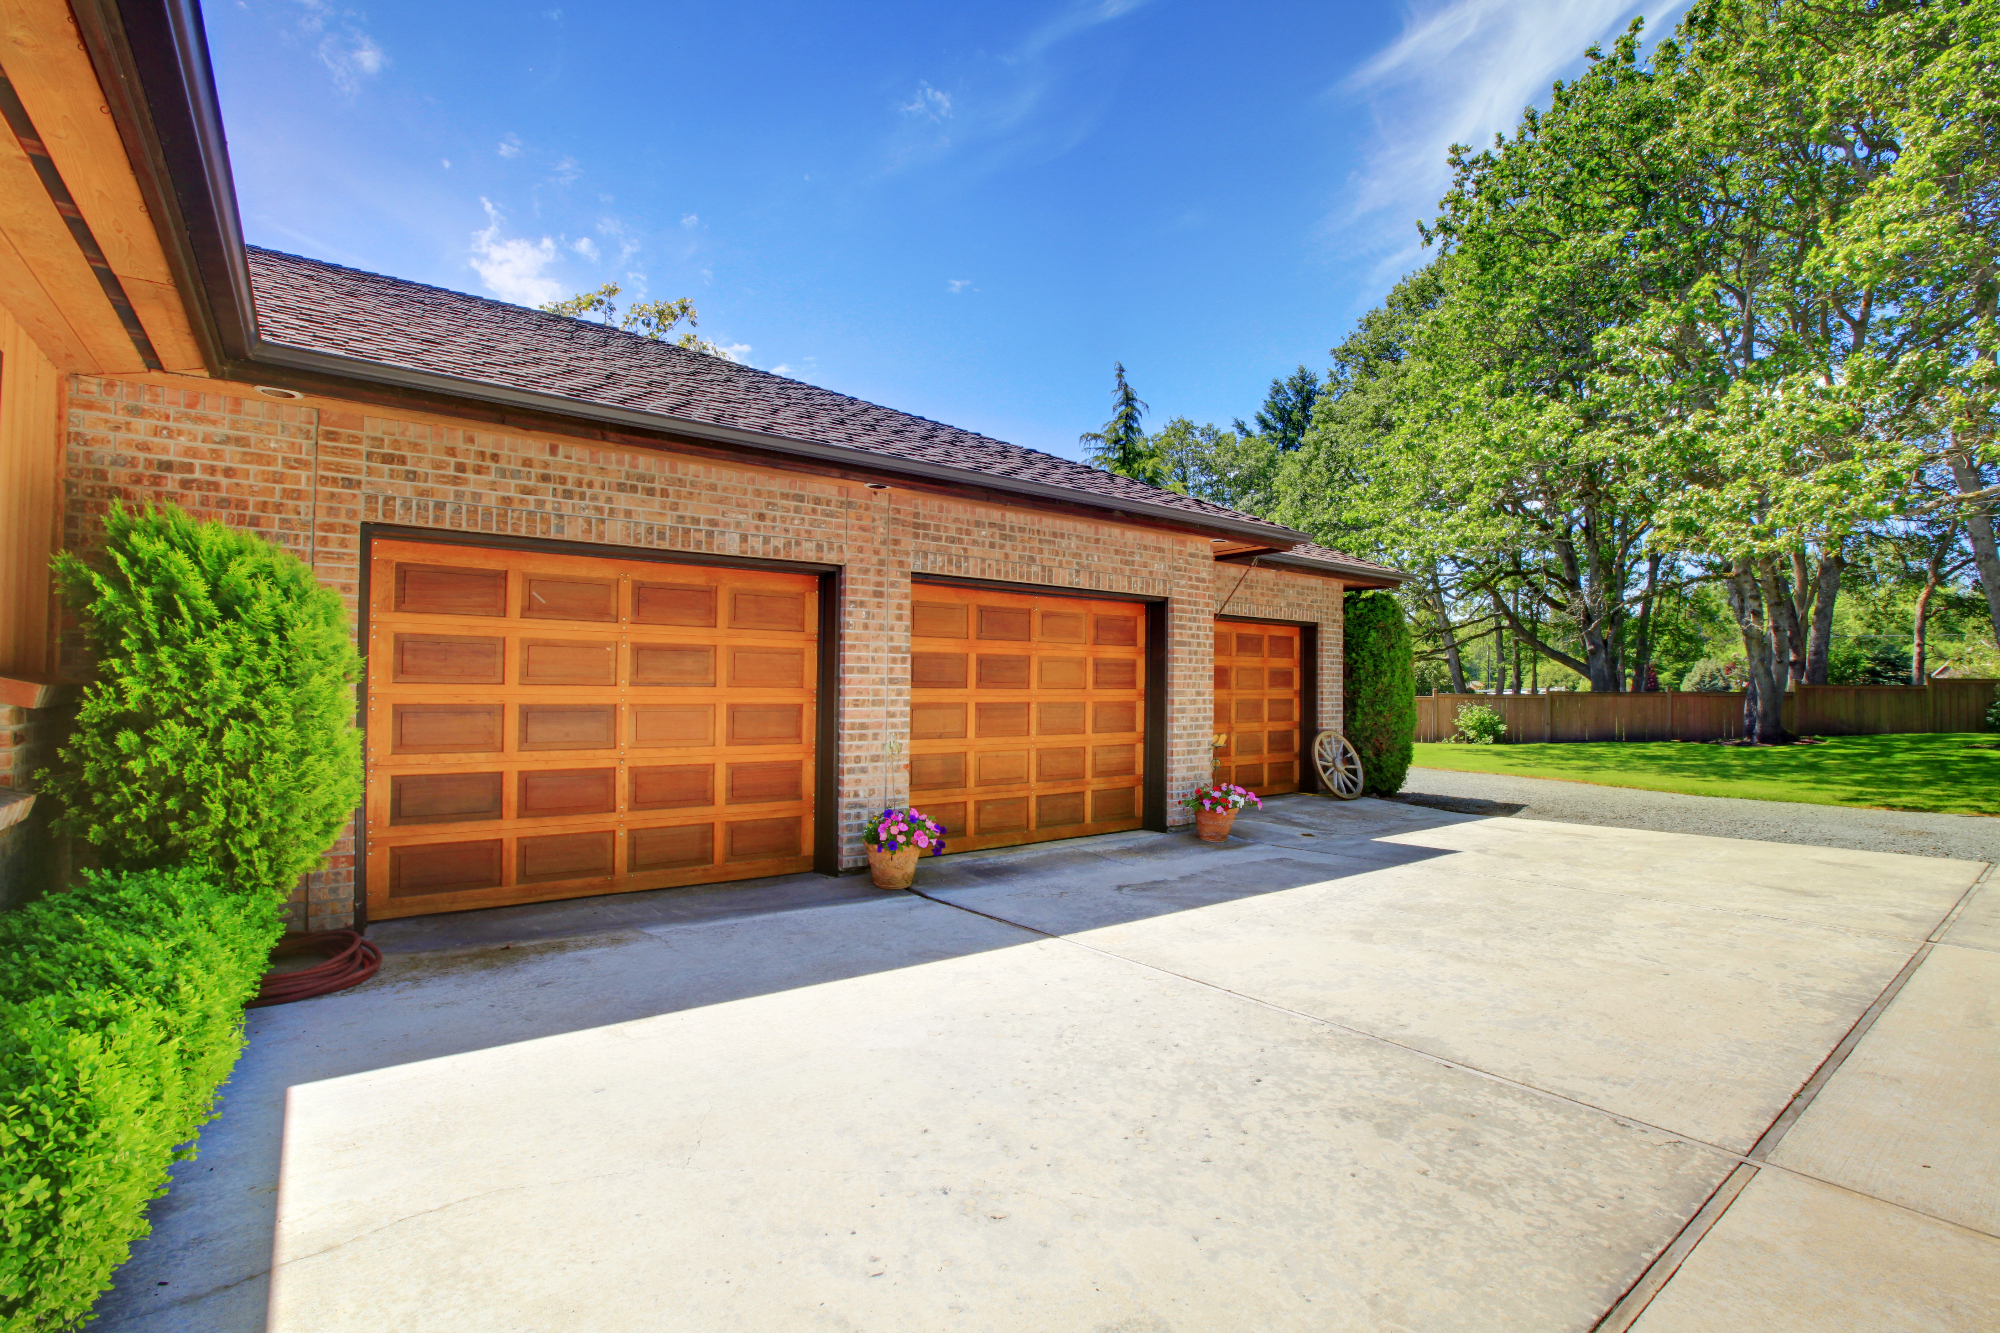 Garažna vrata nam lahko lepo poudarijo hišo